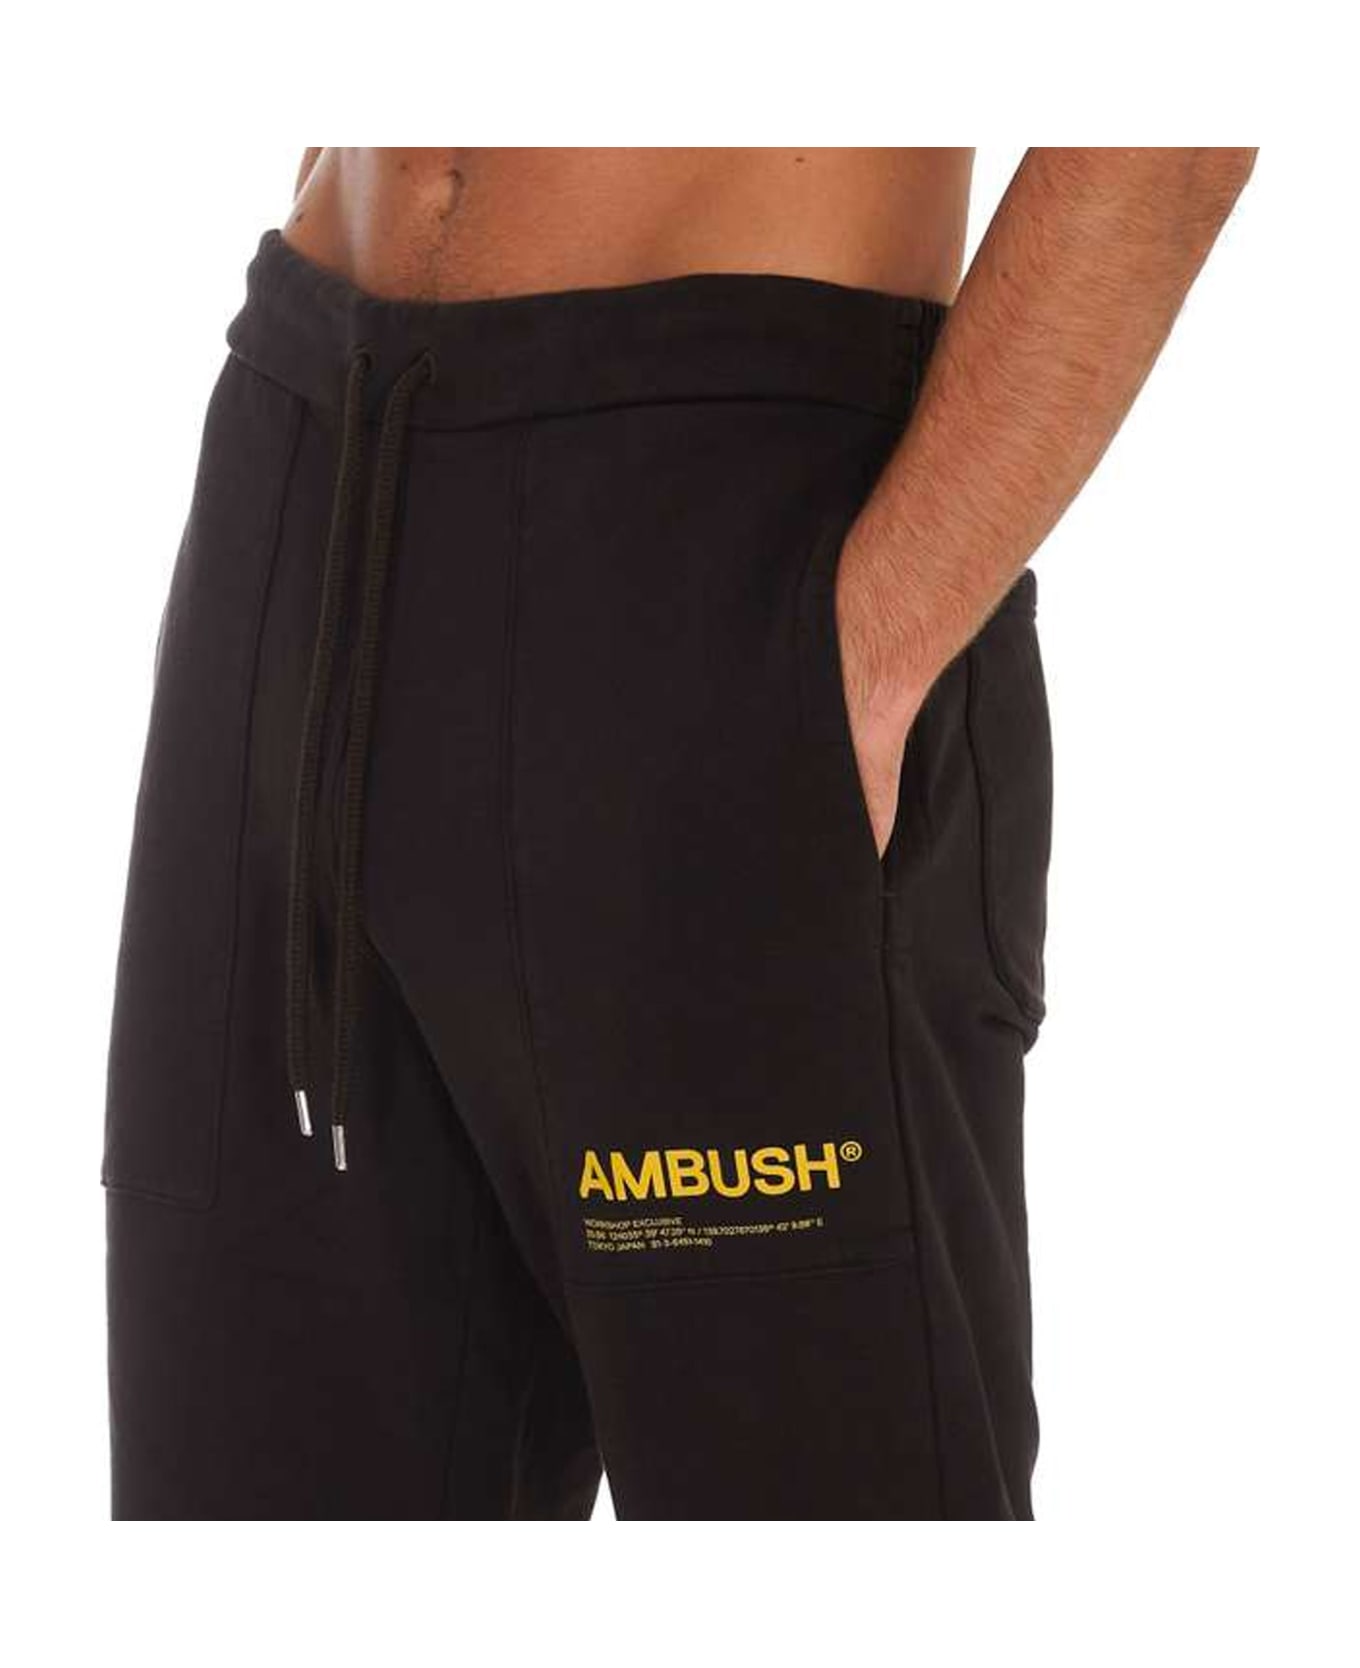 AMBUSH Cotton Logo Sweatpants - Brown